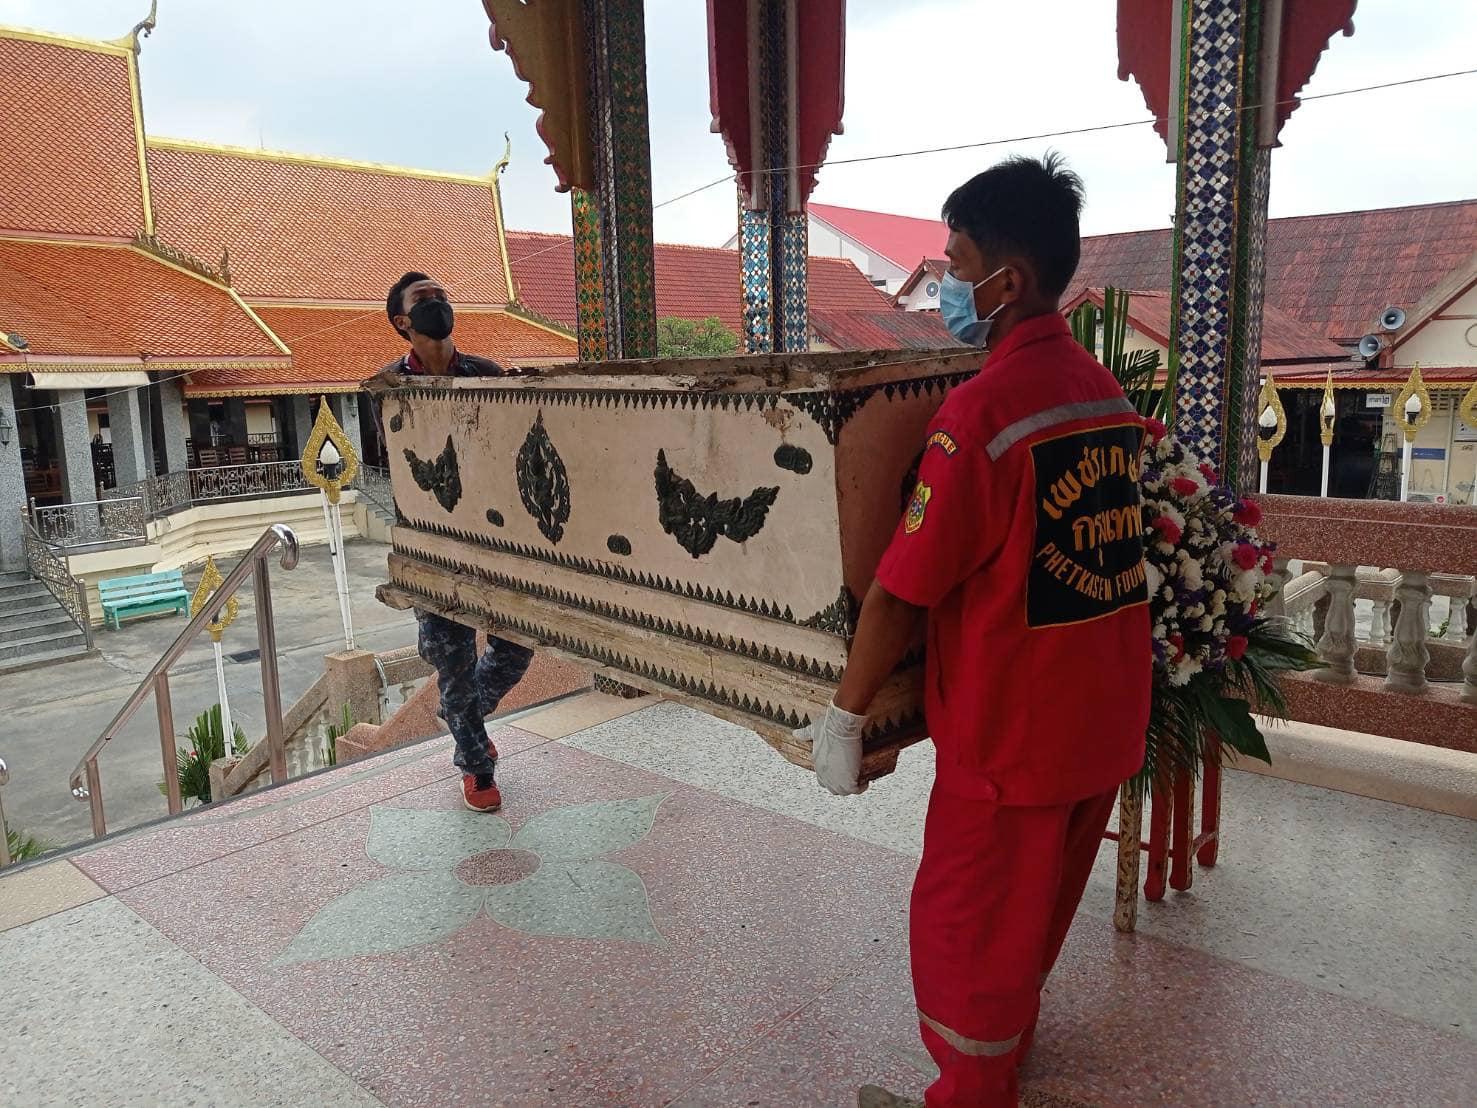 Pentru că şi-a iubit soţia prea mult, un thailandez a stat cu cadavrul ei în casă timp de două decenii